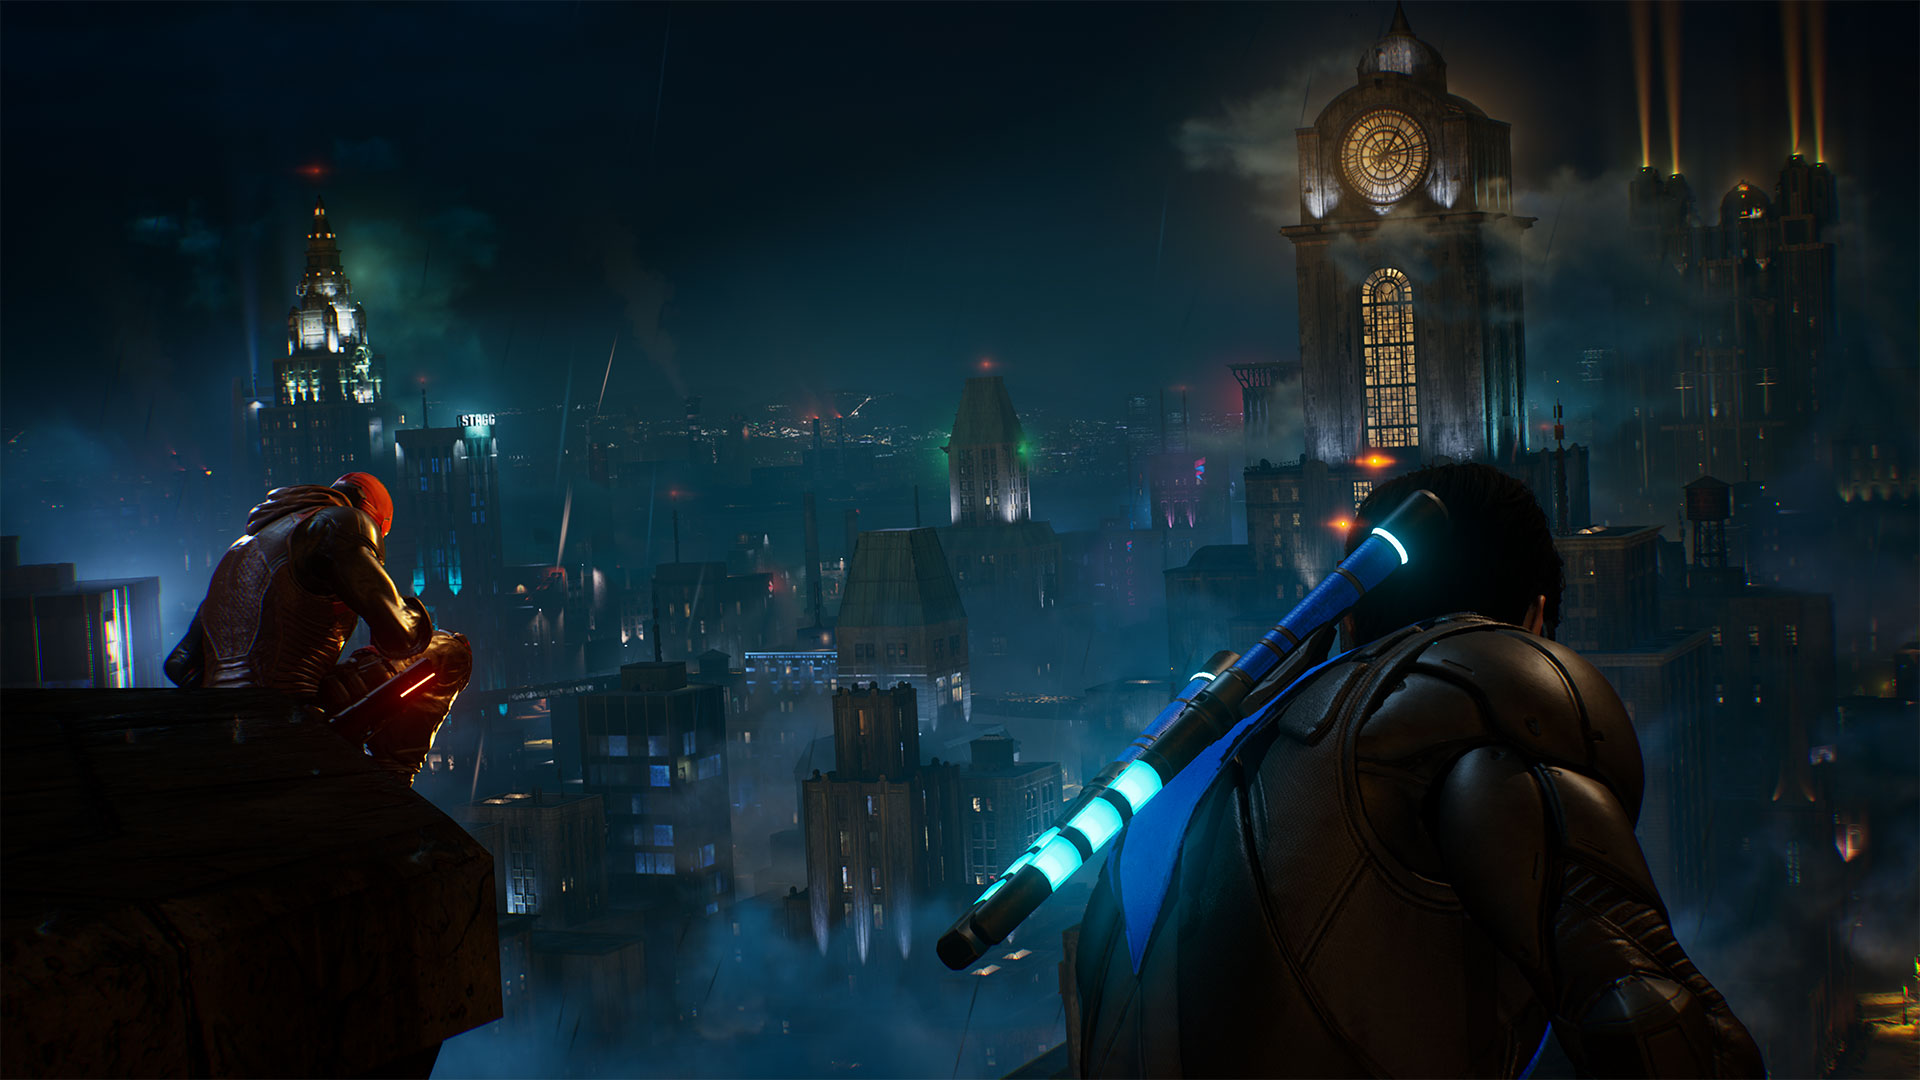 Gotham Knights terá a maior versão de Gotham num videojogo